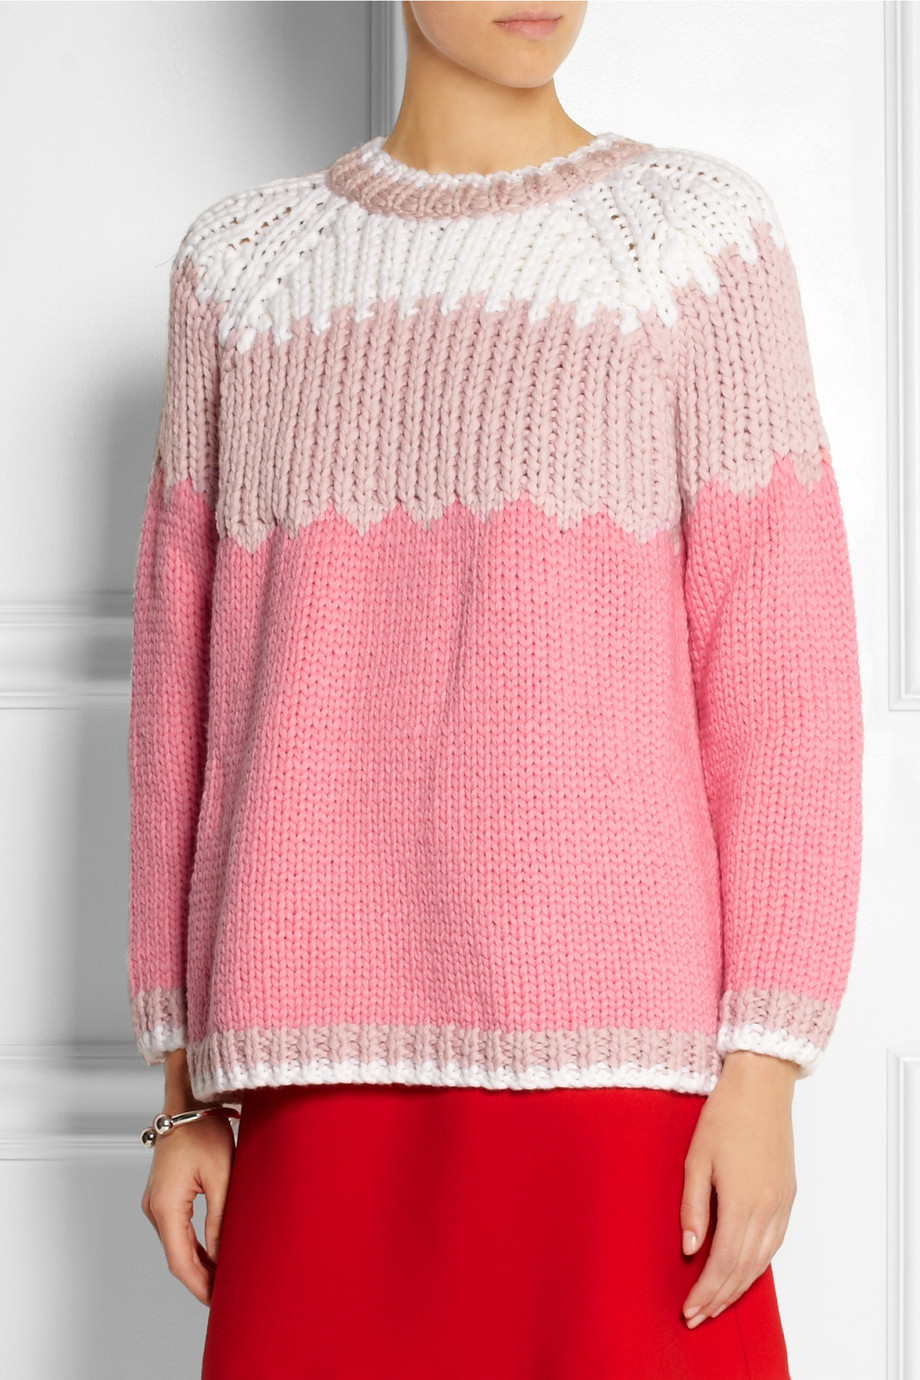 Miu Miu Chunky-knit Wool Sweater in Pink - Lyst